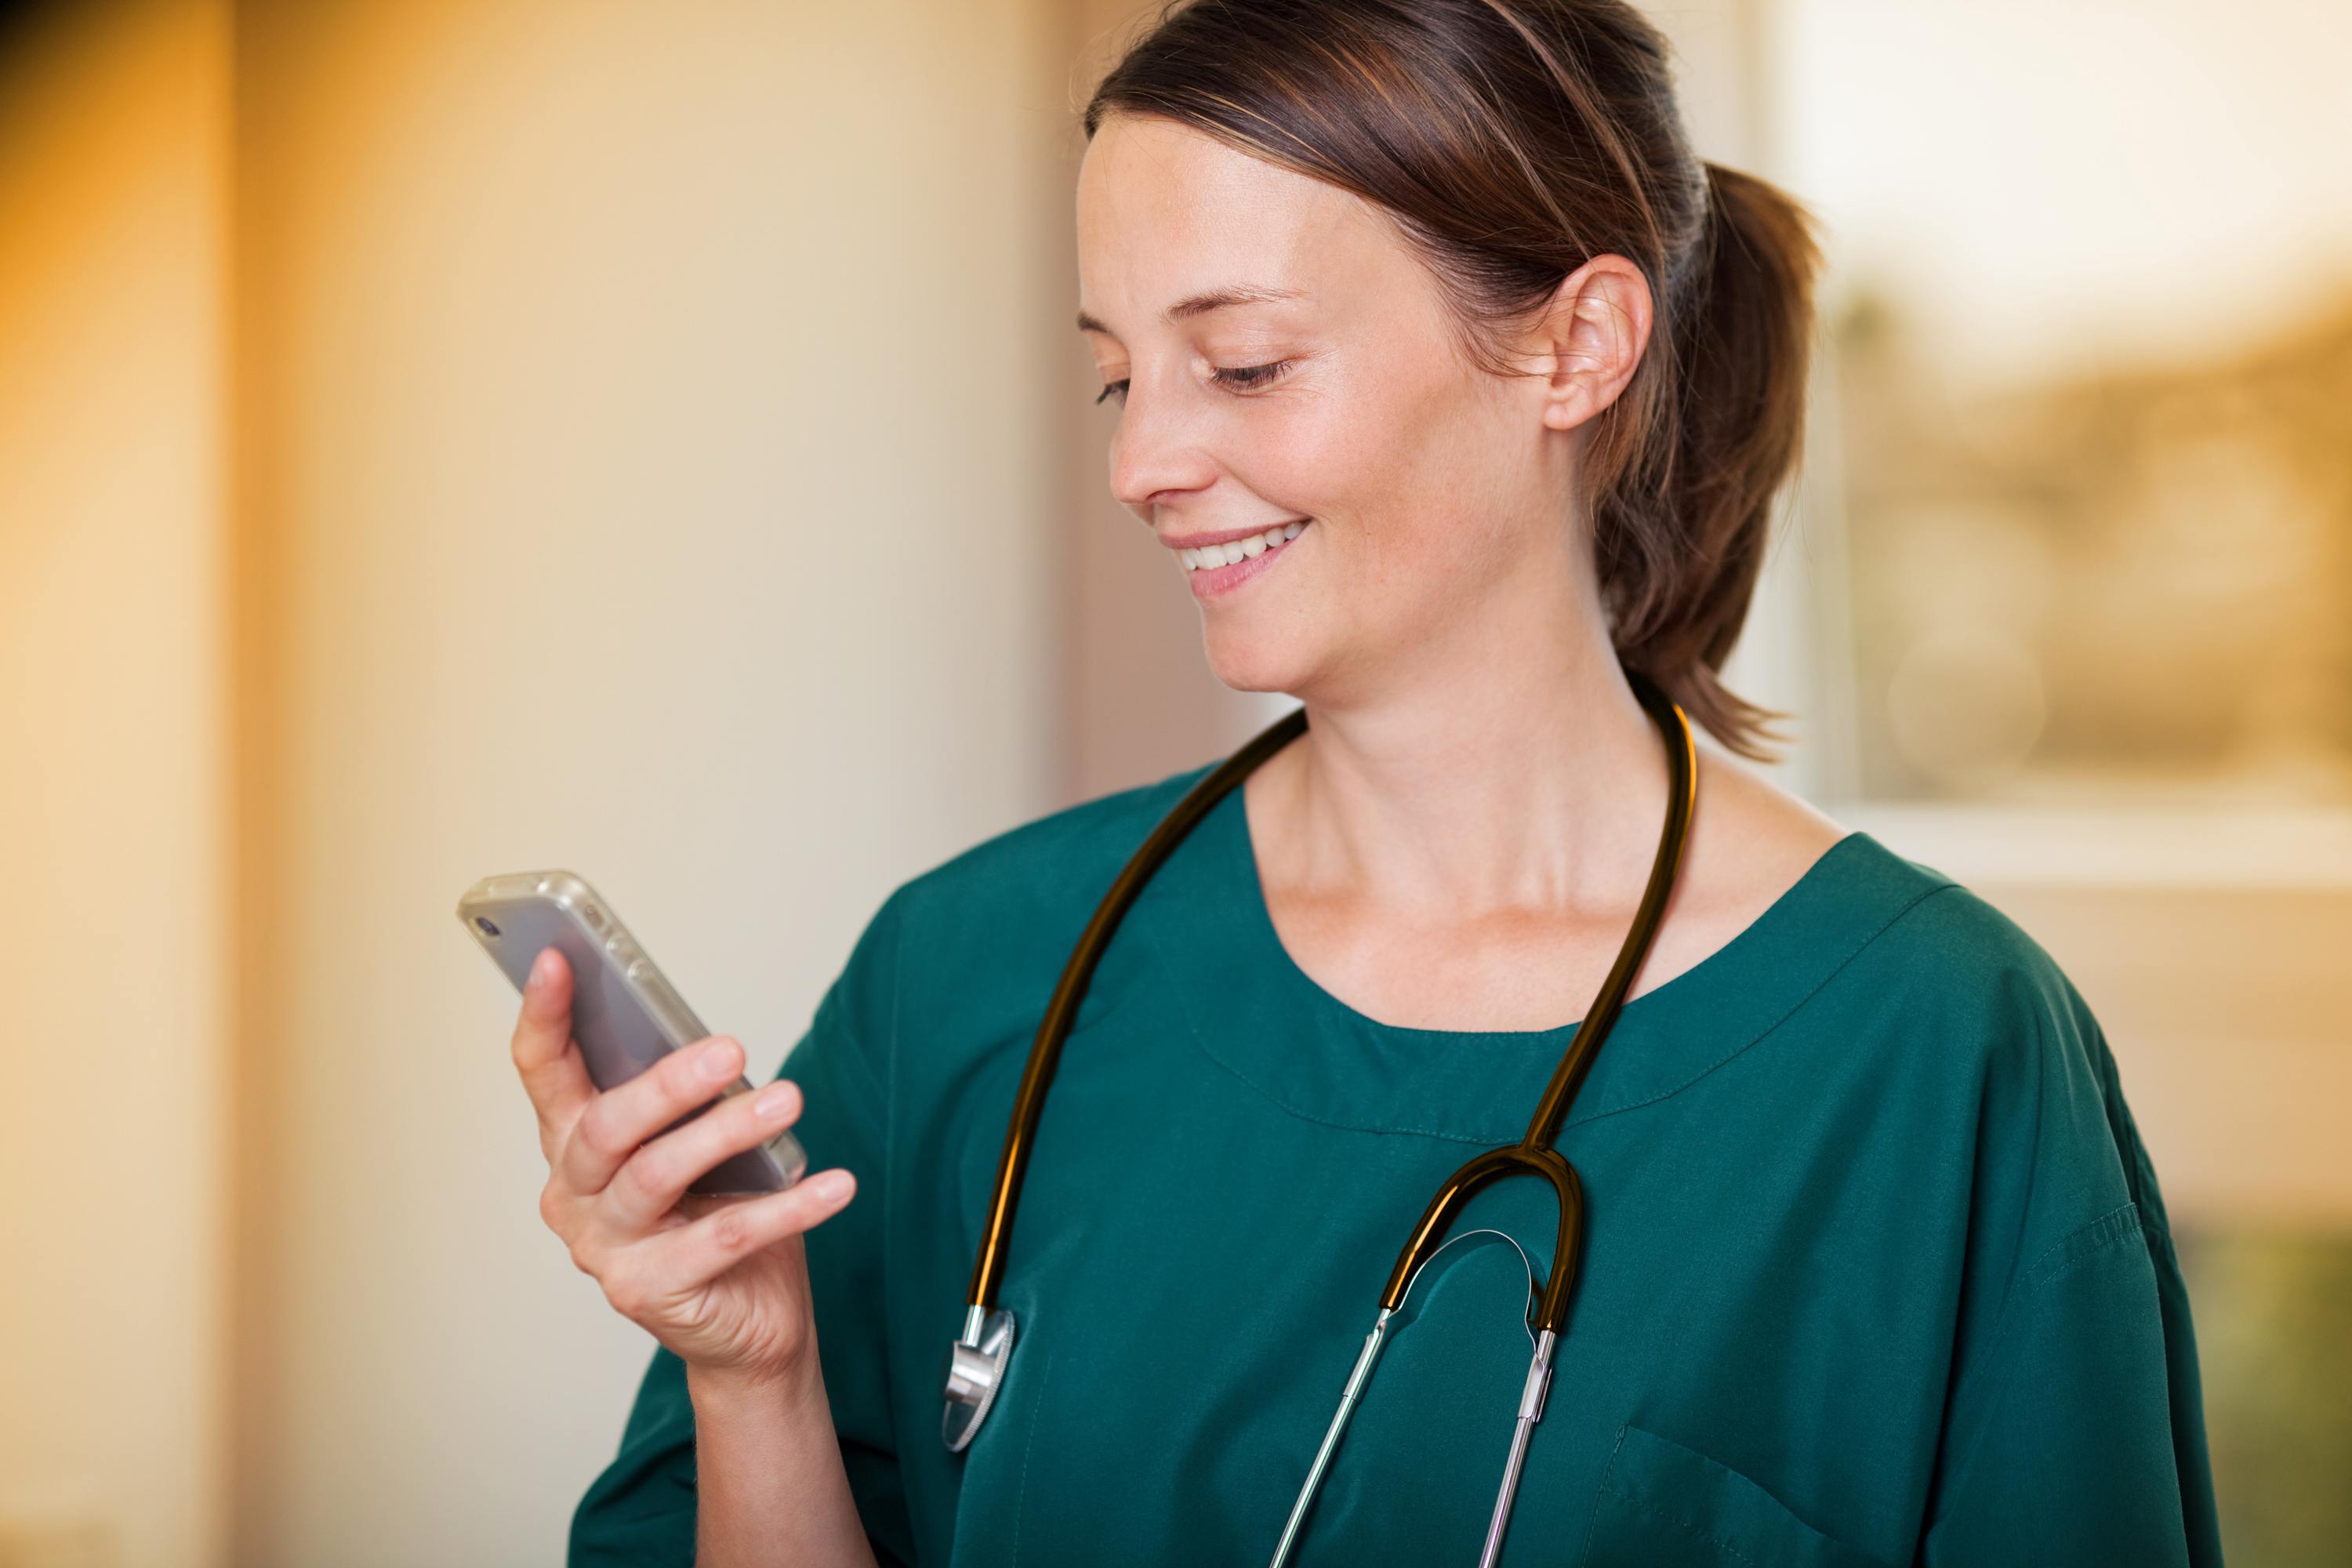 Ärztin mit Stethoskop um den Hals liest lächelnd eine Kurznachricht auf ihrem Smartphone